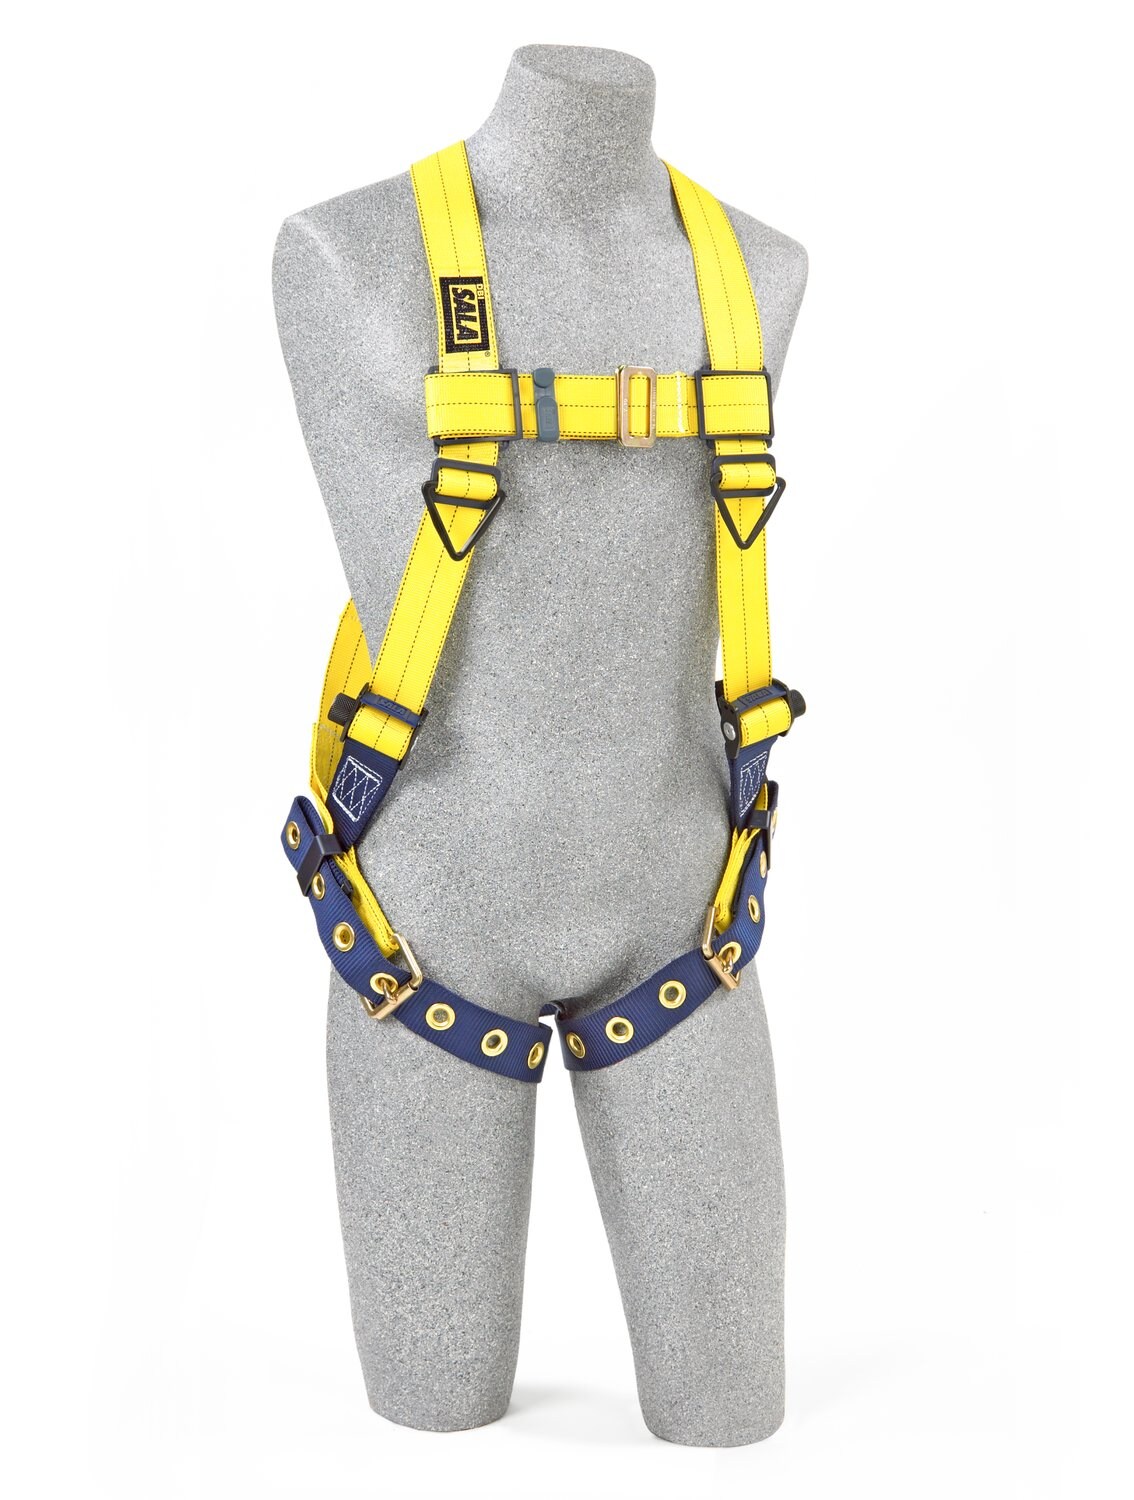 7012815530 - 3M DBI-SALA Delta Vest Safety Harness 1106024, Large